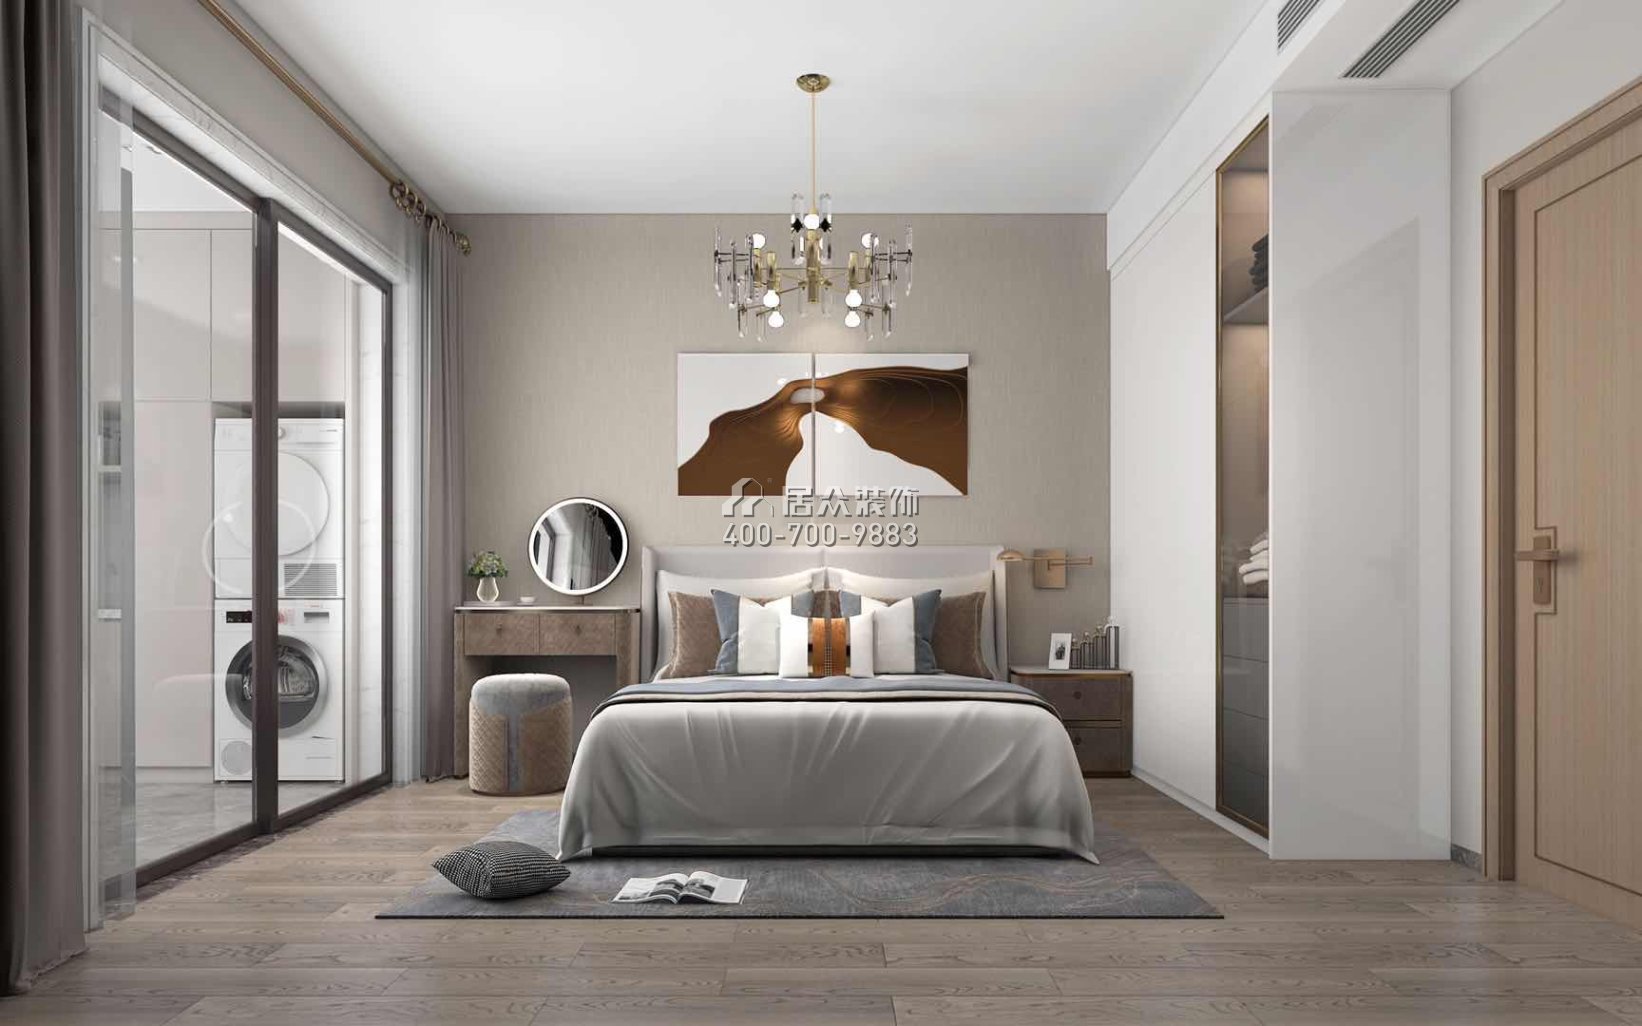 绿景红树湾壹号180平方米现代简约风格平层户型卧室装修效果图